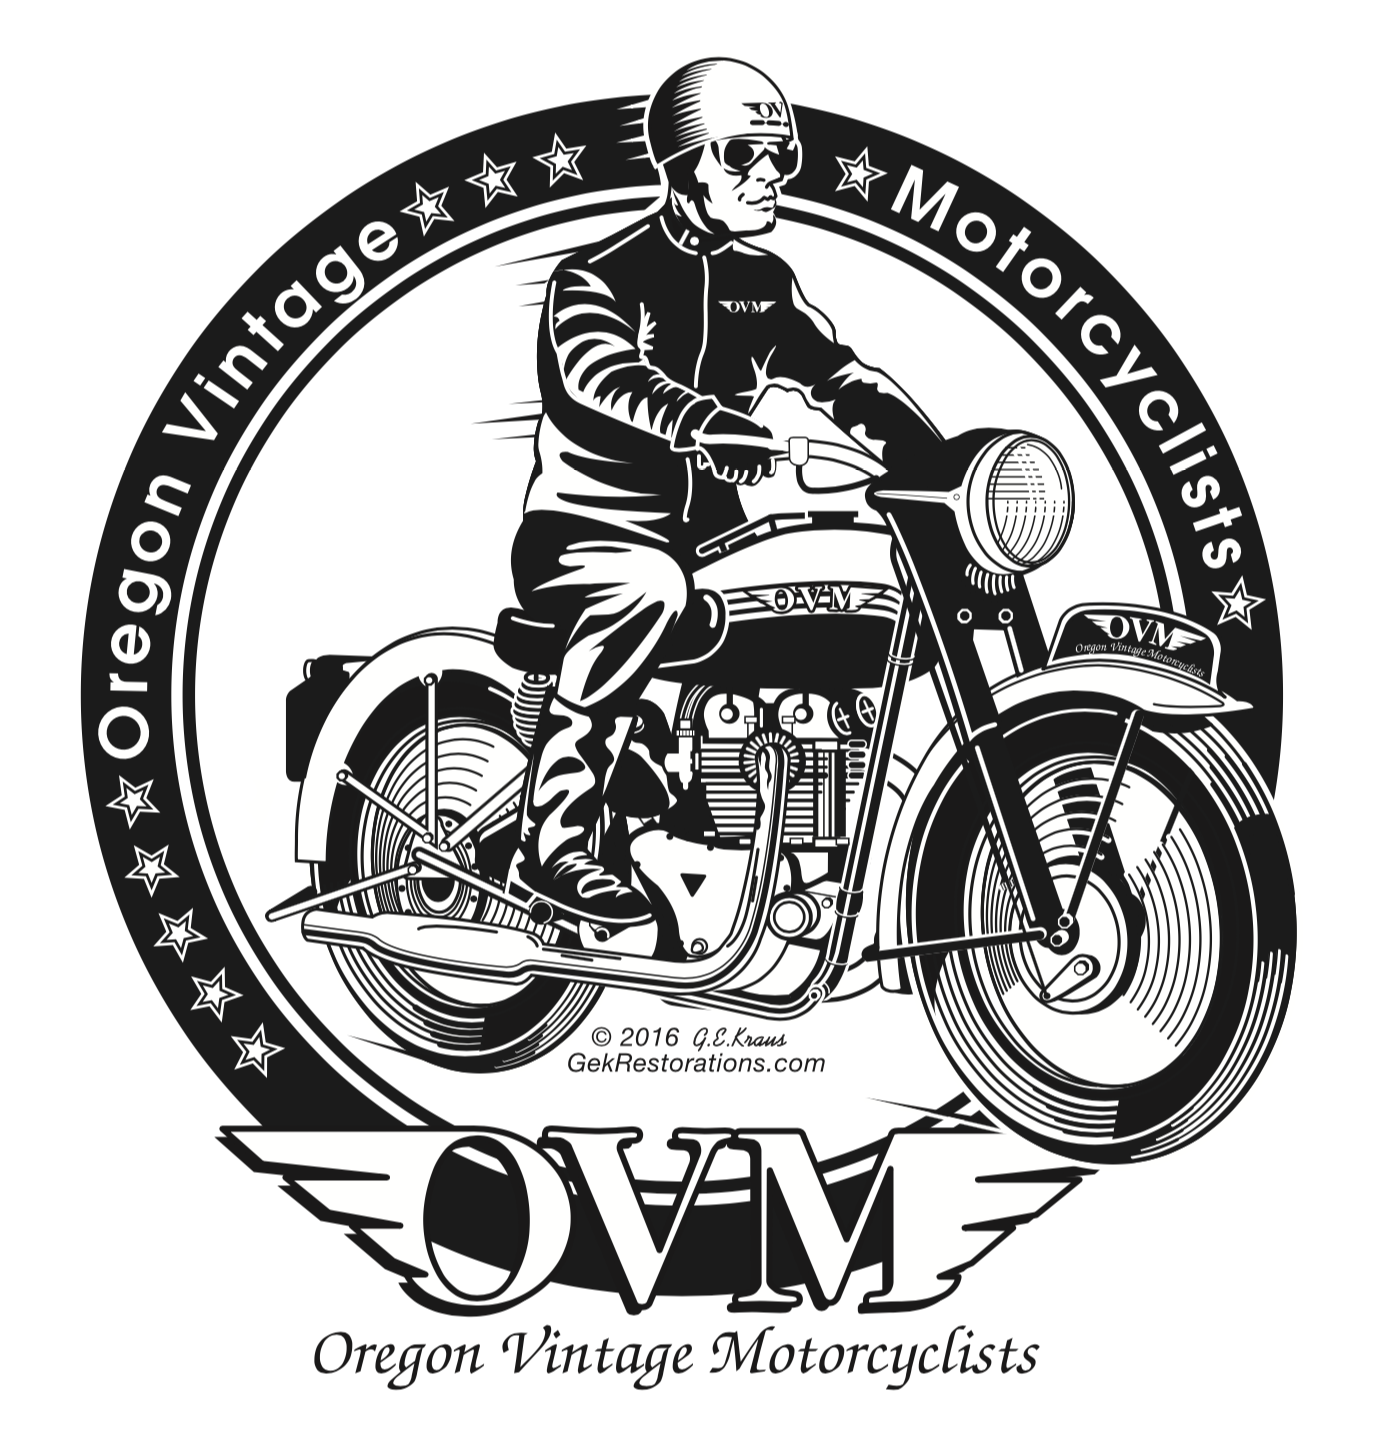 Oregon Vintage Motorcyclists